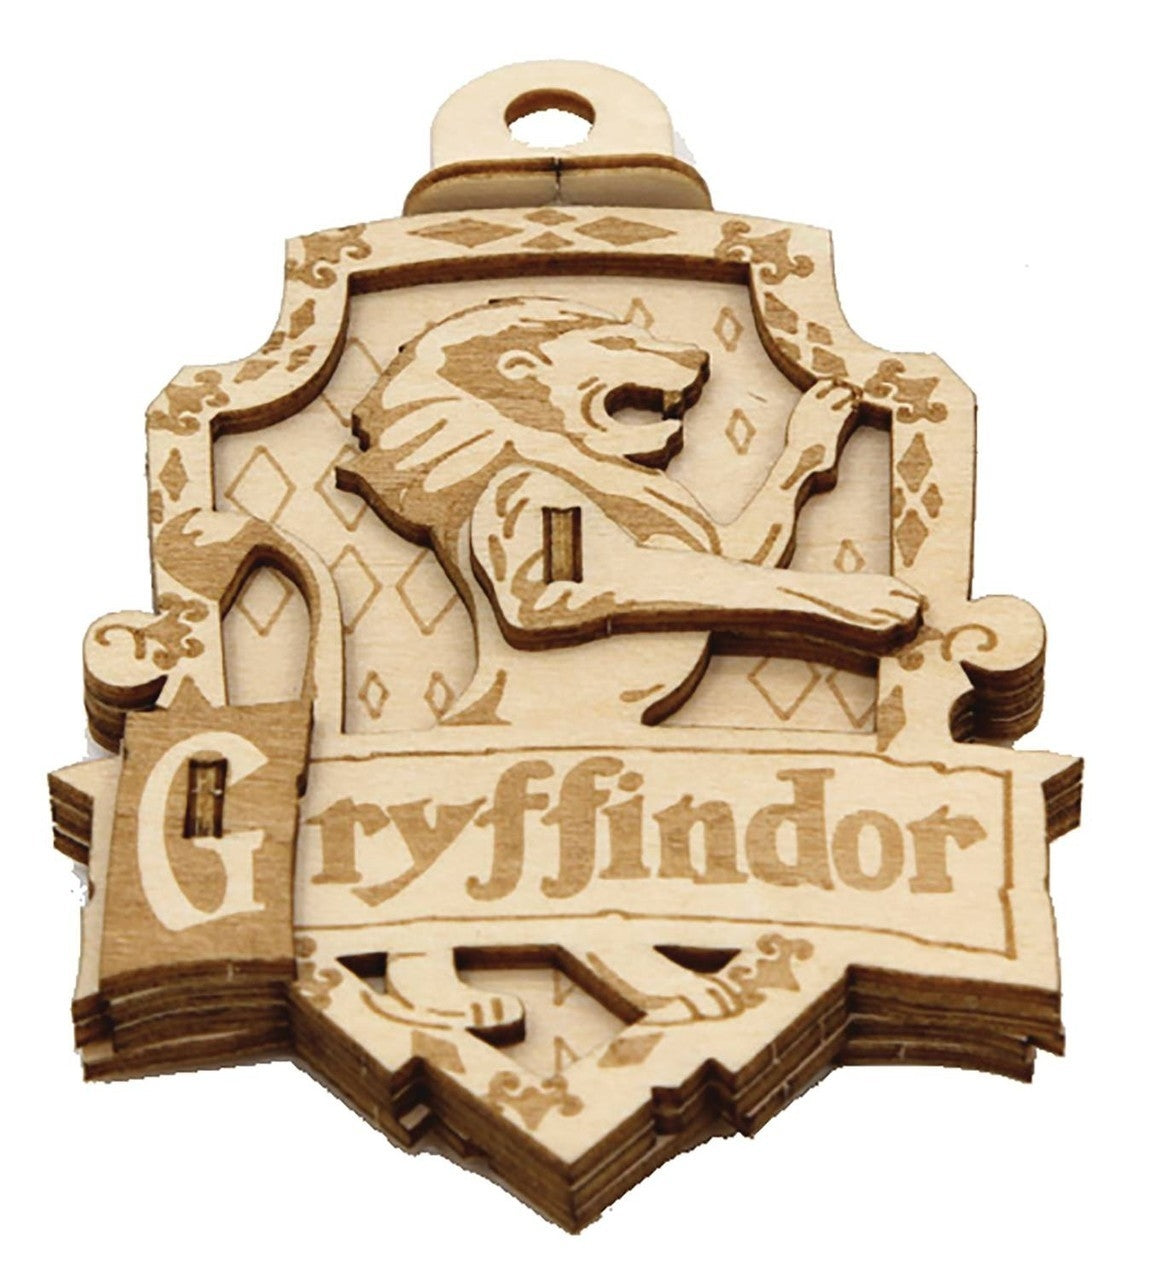 Gryffindor - Incredibuilds Emblematics Harry Potter